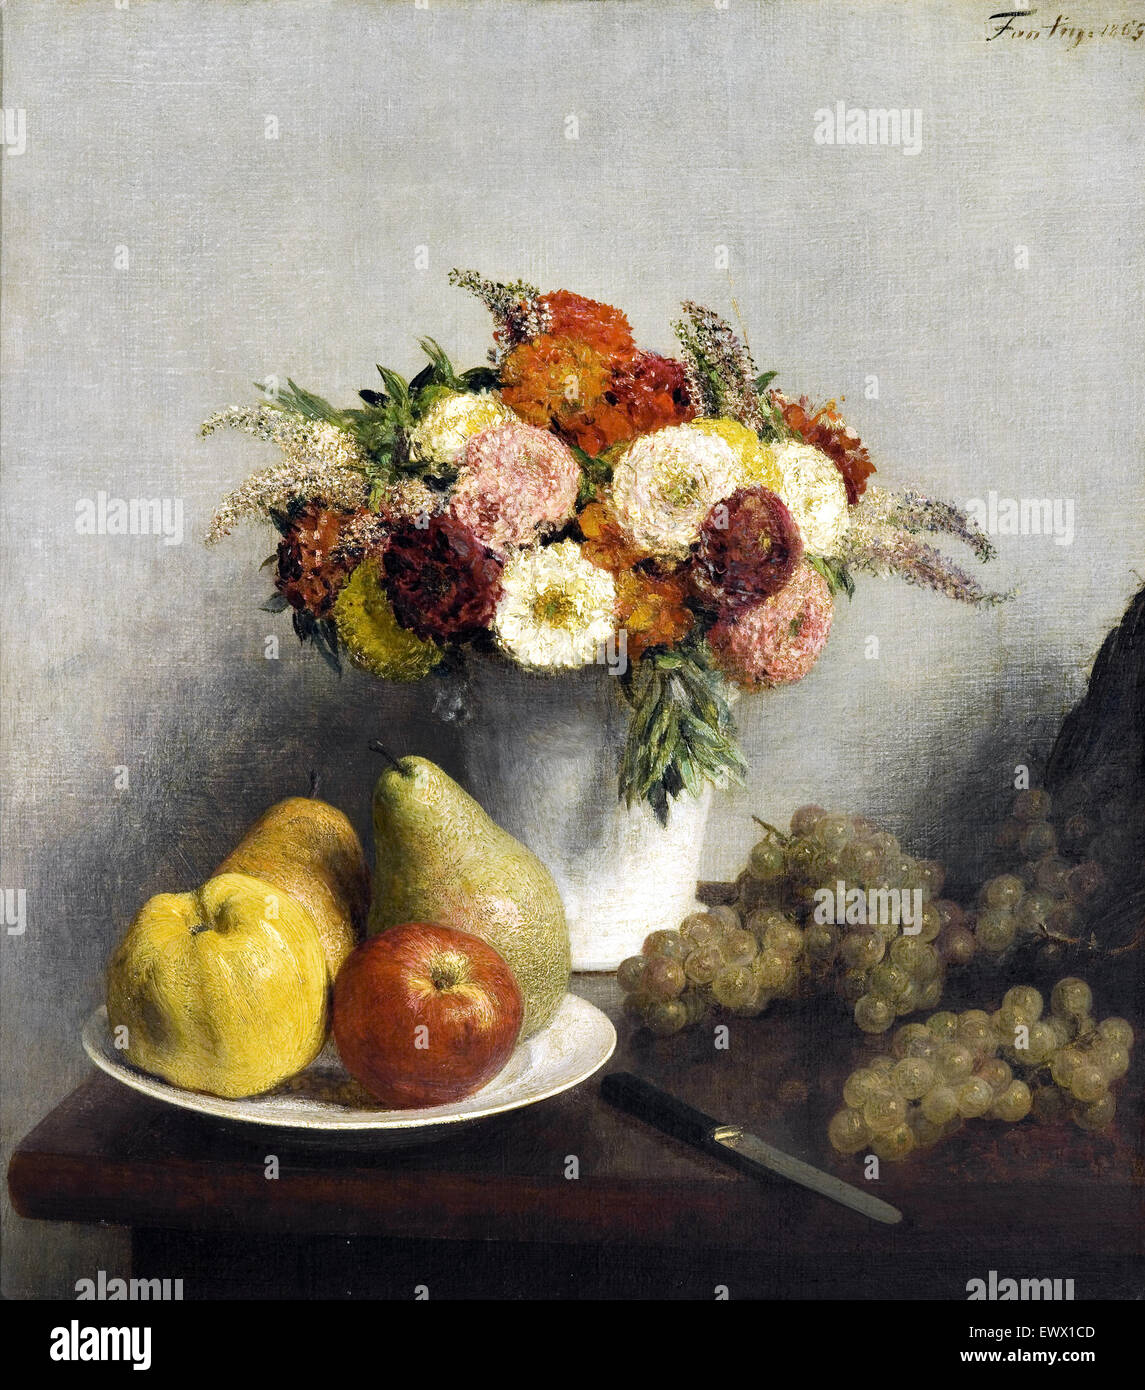 Henri Fantin-Latour, fleurs et fruits 1865 Huile sur toile. Musée d'Orsay, Paris, France. Banque D'Images